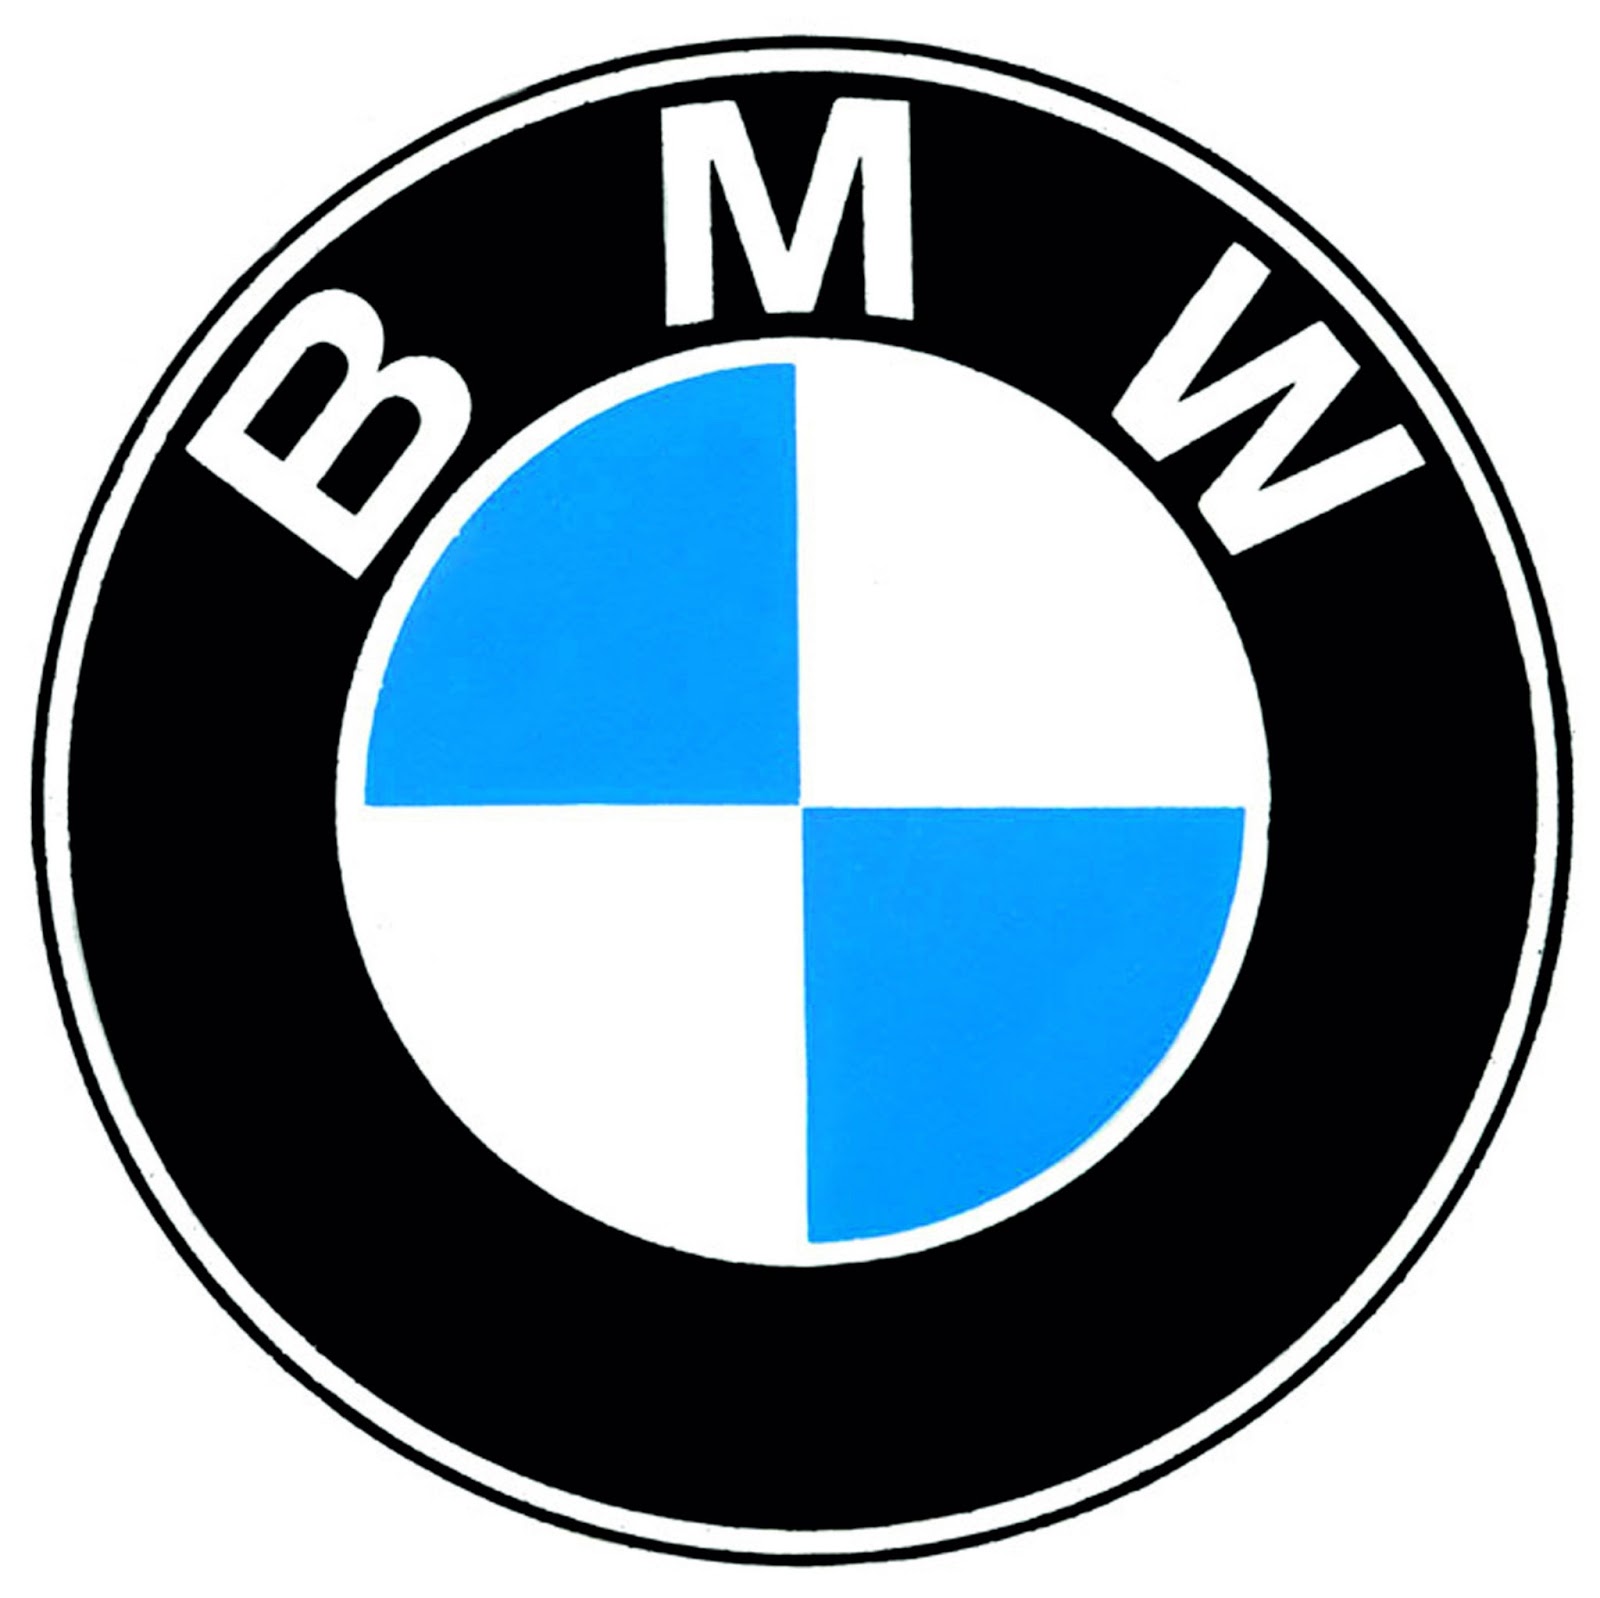 Bmw car logo history #2